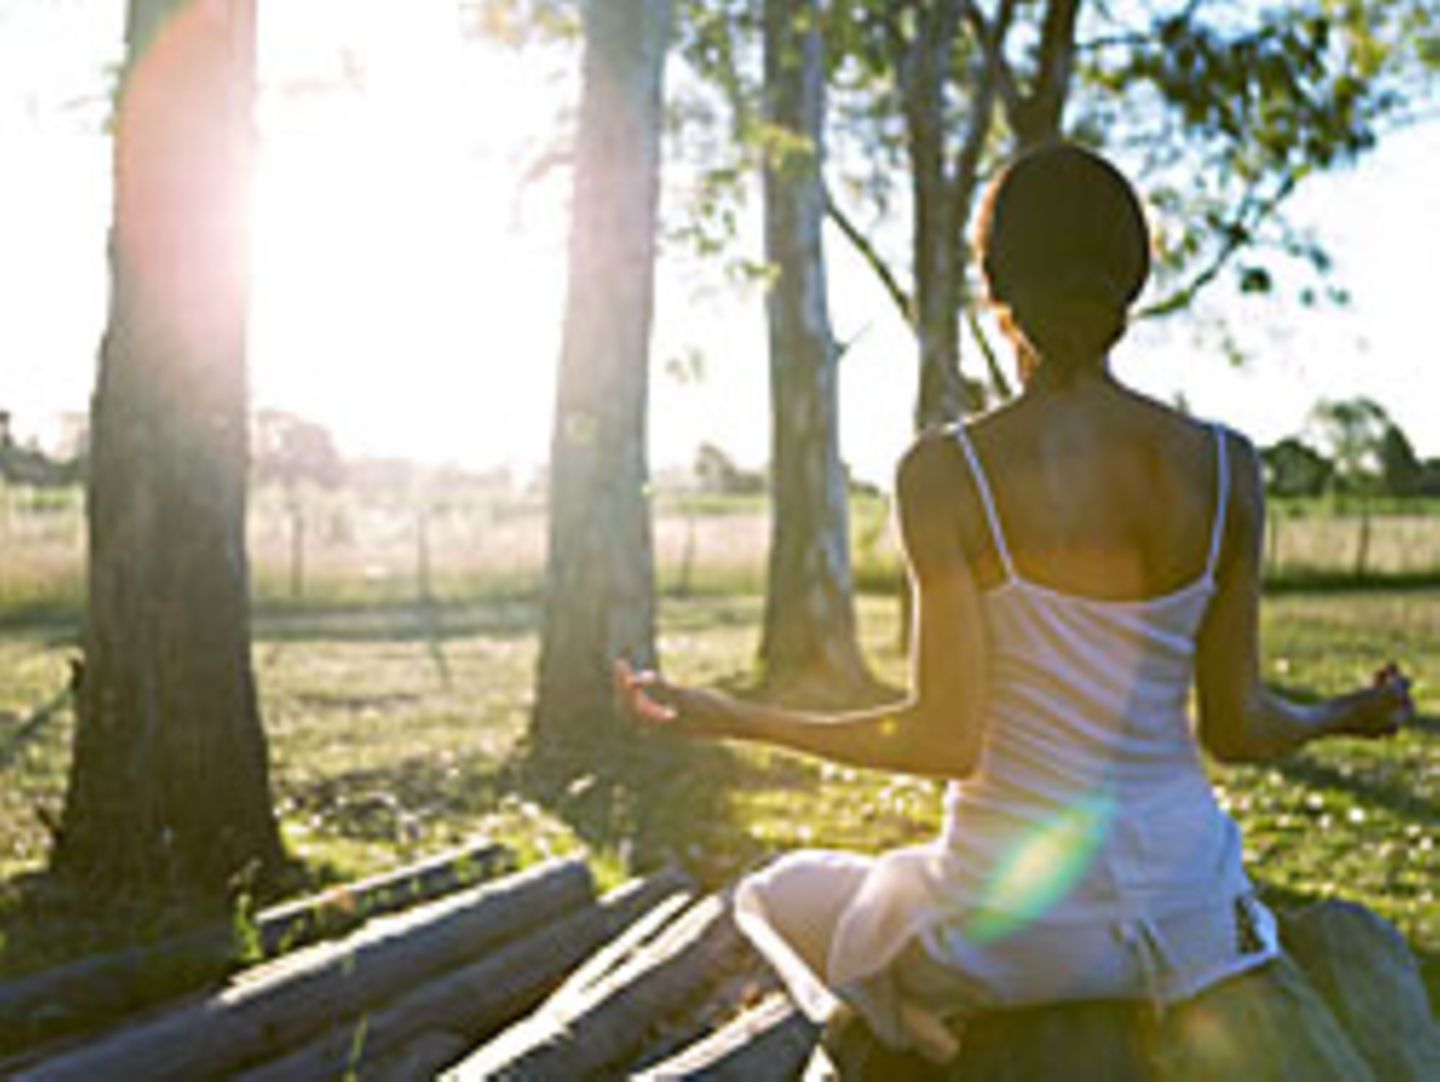 Auszeit vom Alltag: Wer regelmäßig meditiert, ist nicht nur gelassener, sondern lebt auch gesünder